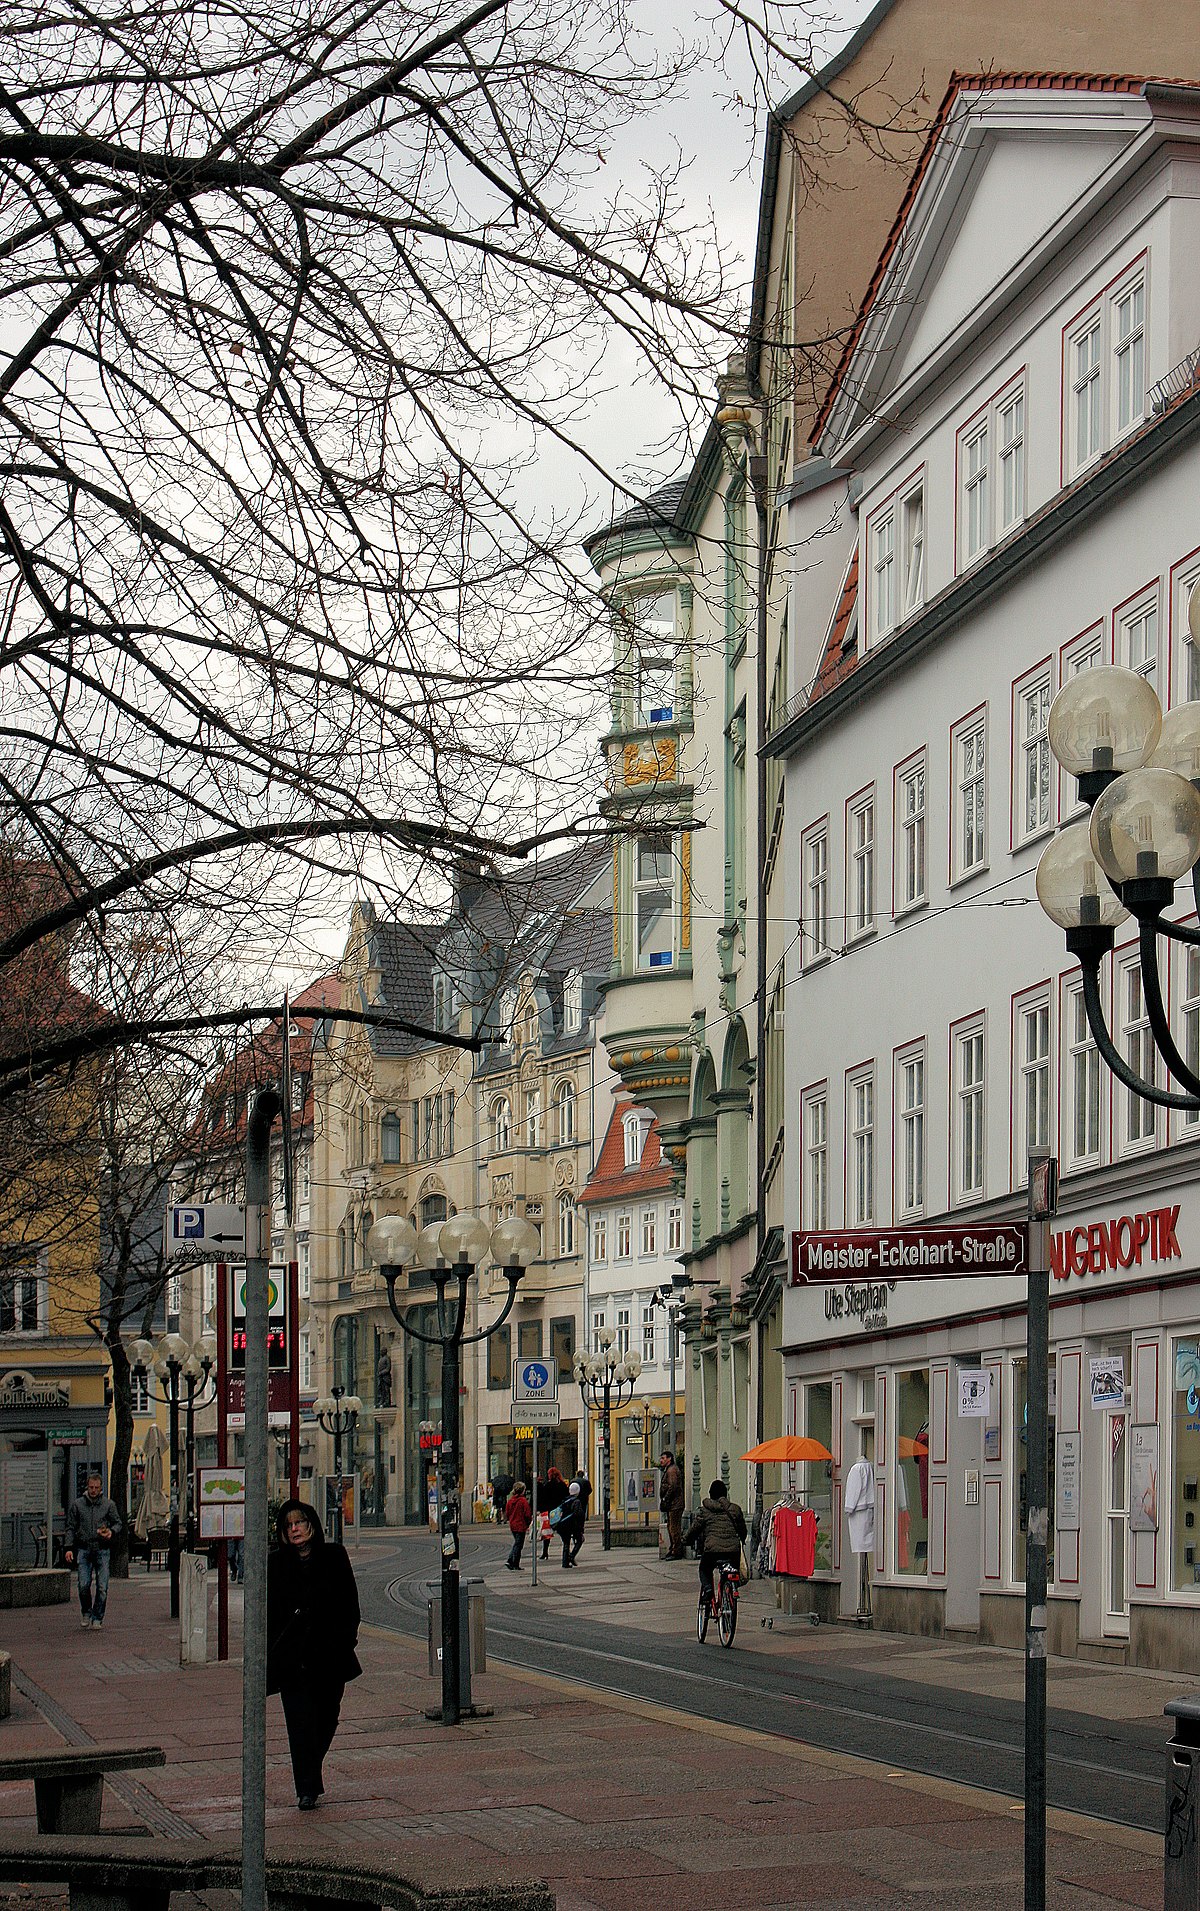 Datei:Erfurt, Haus Regierungsstraße 2.jpg - Wikipedia